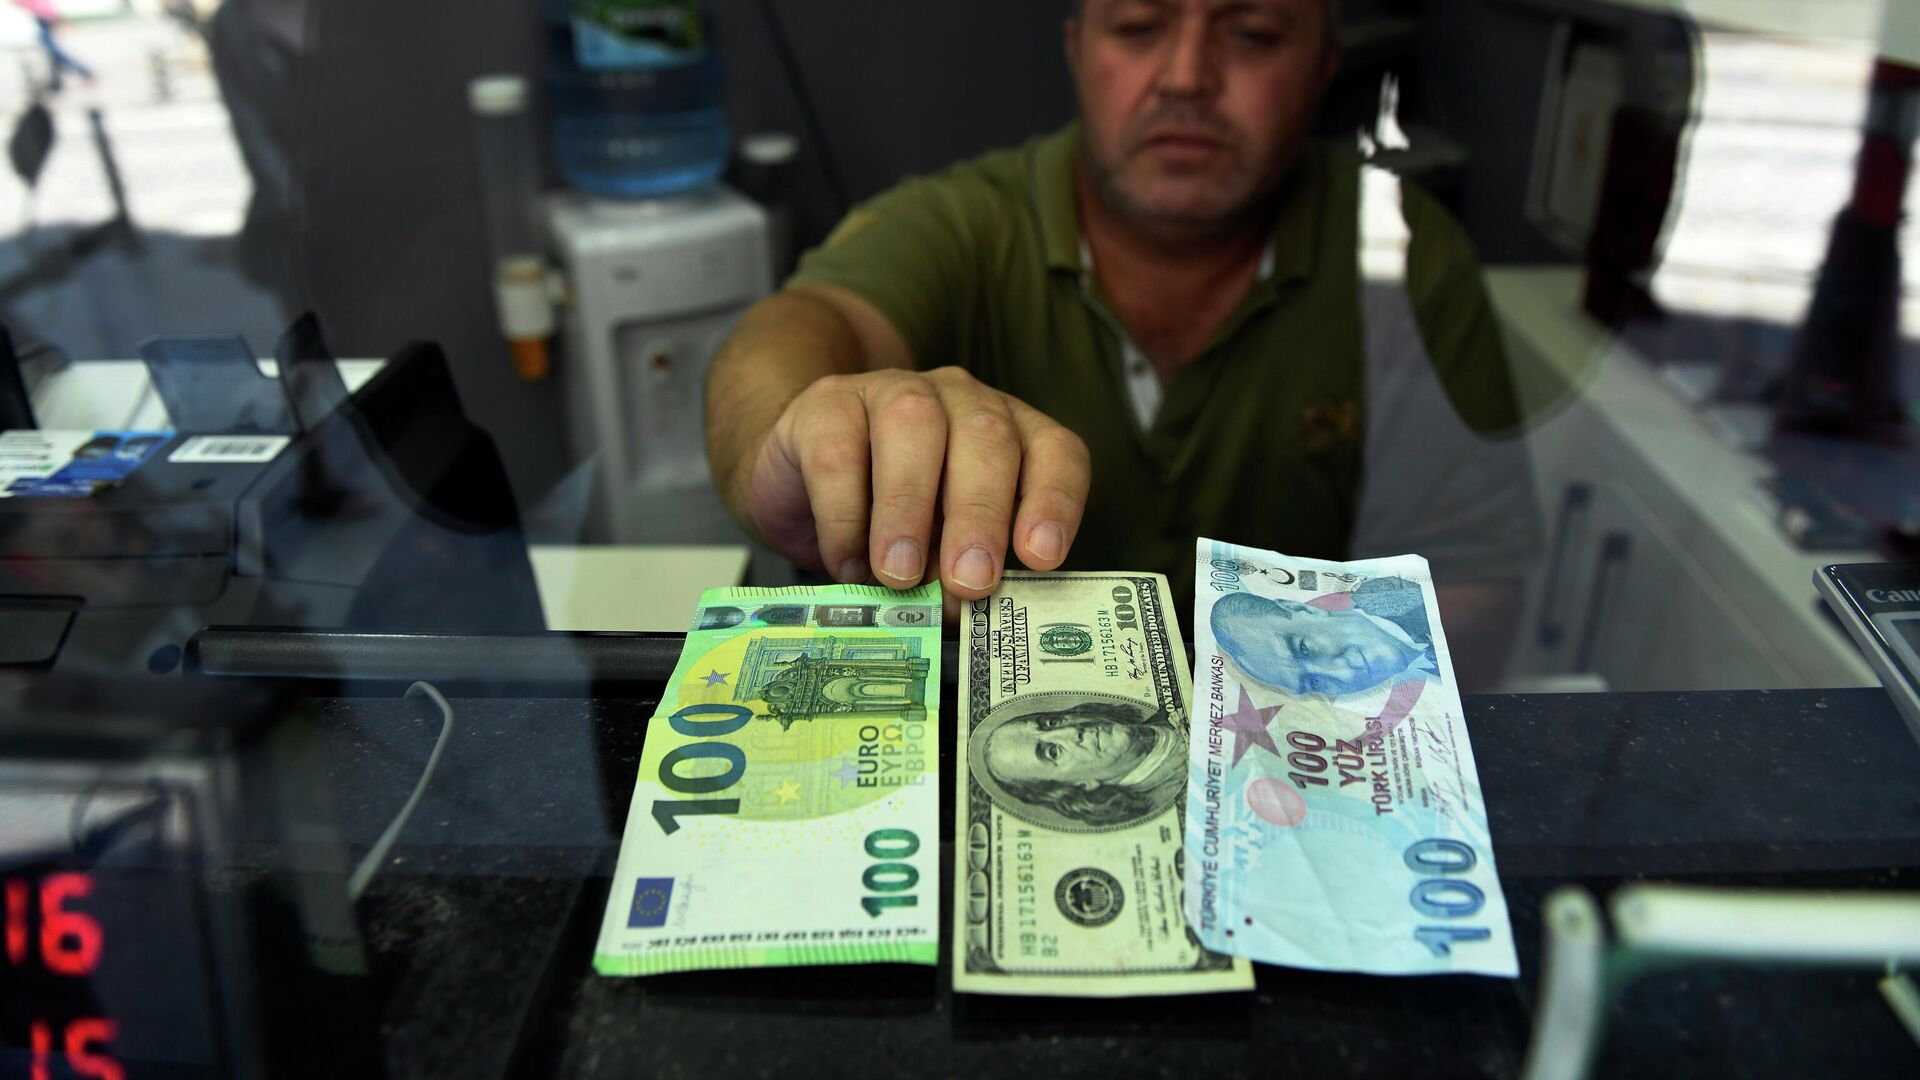 Сотрудник пункта обмена валюты показывает банкноты 100 евро, 100 долларов США и 100 турецких лир, фото из архива - Sputnik Азербайджан, 1920, 28.01.2022